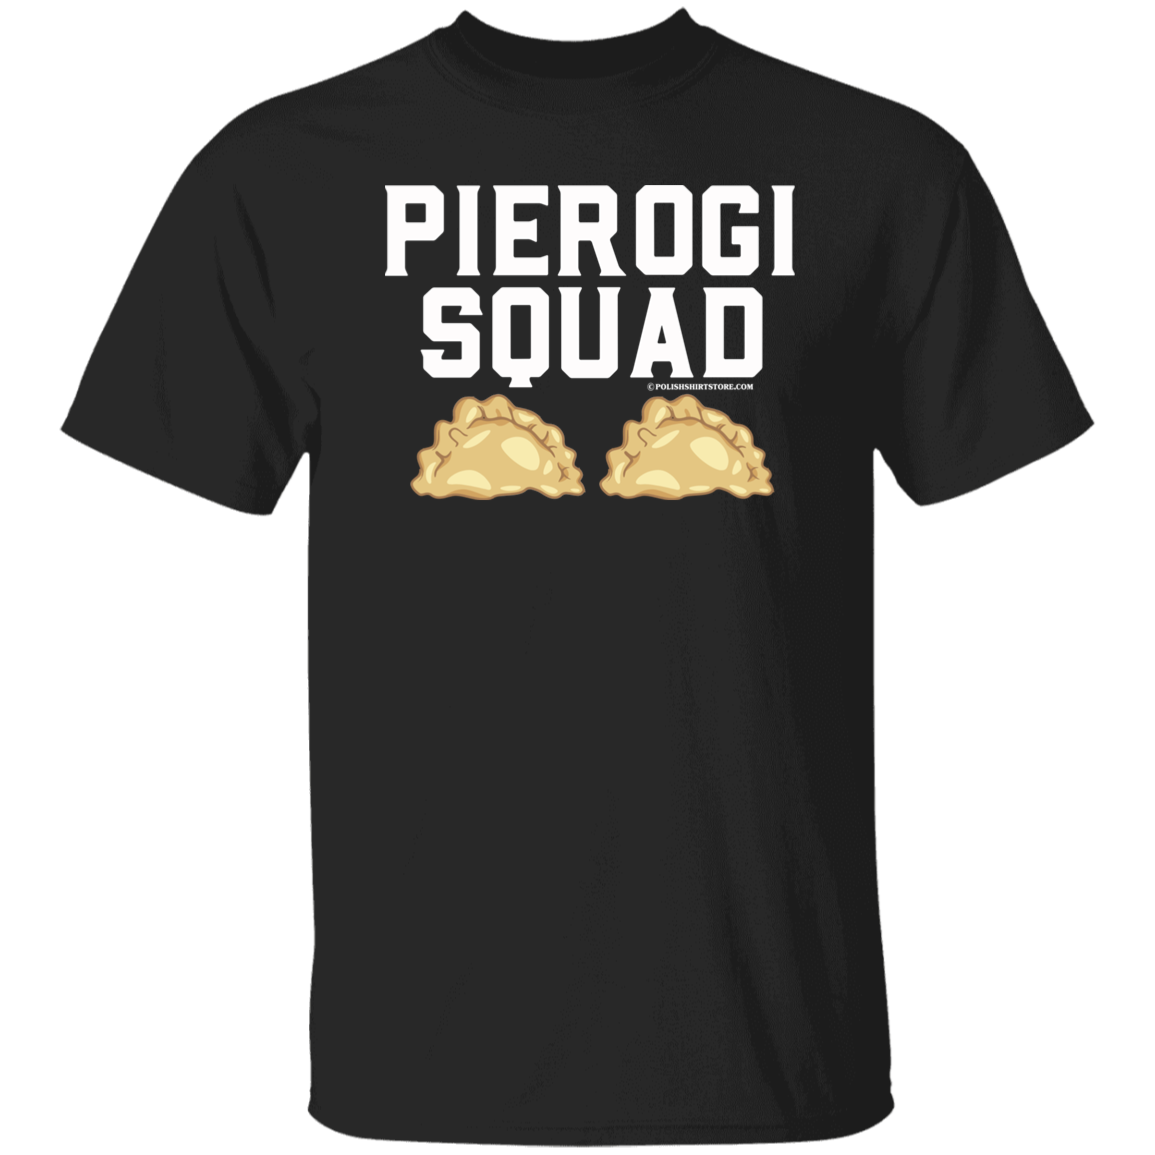 Pierogi Squad Apparel CustomCat G500 5.3 oz. T-Shirt Black S